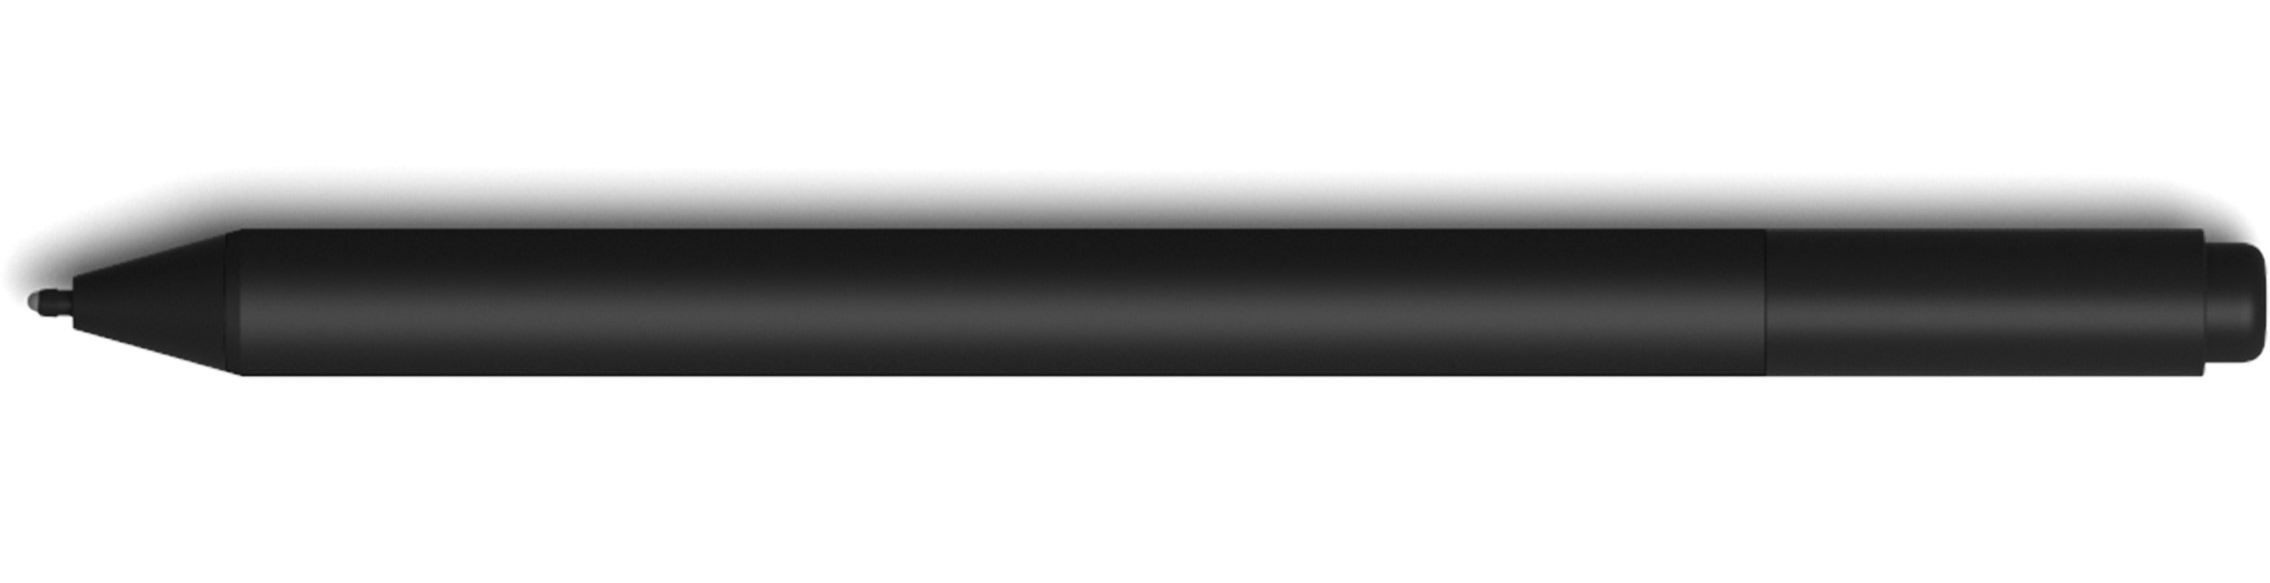 Surface Pro pen V4 XZ/NL/FR/DE Hdwr Commercial CHARCOAL